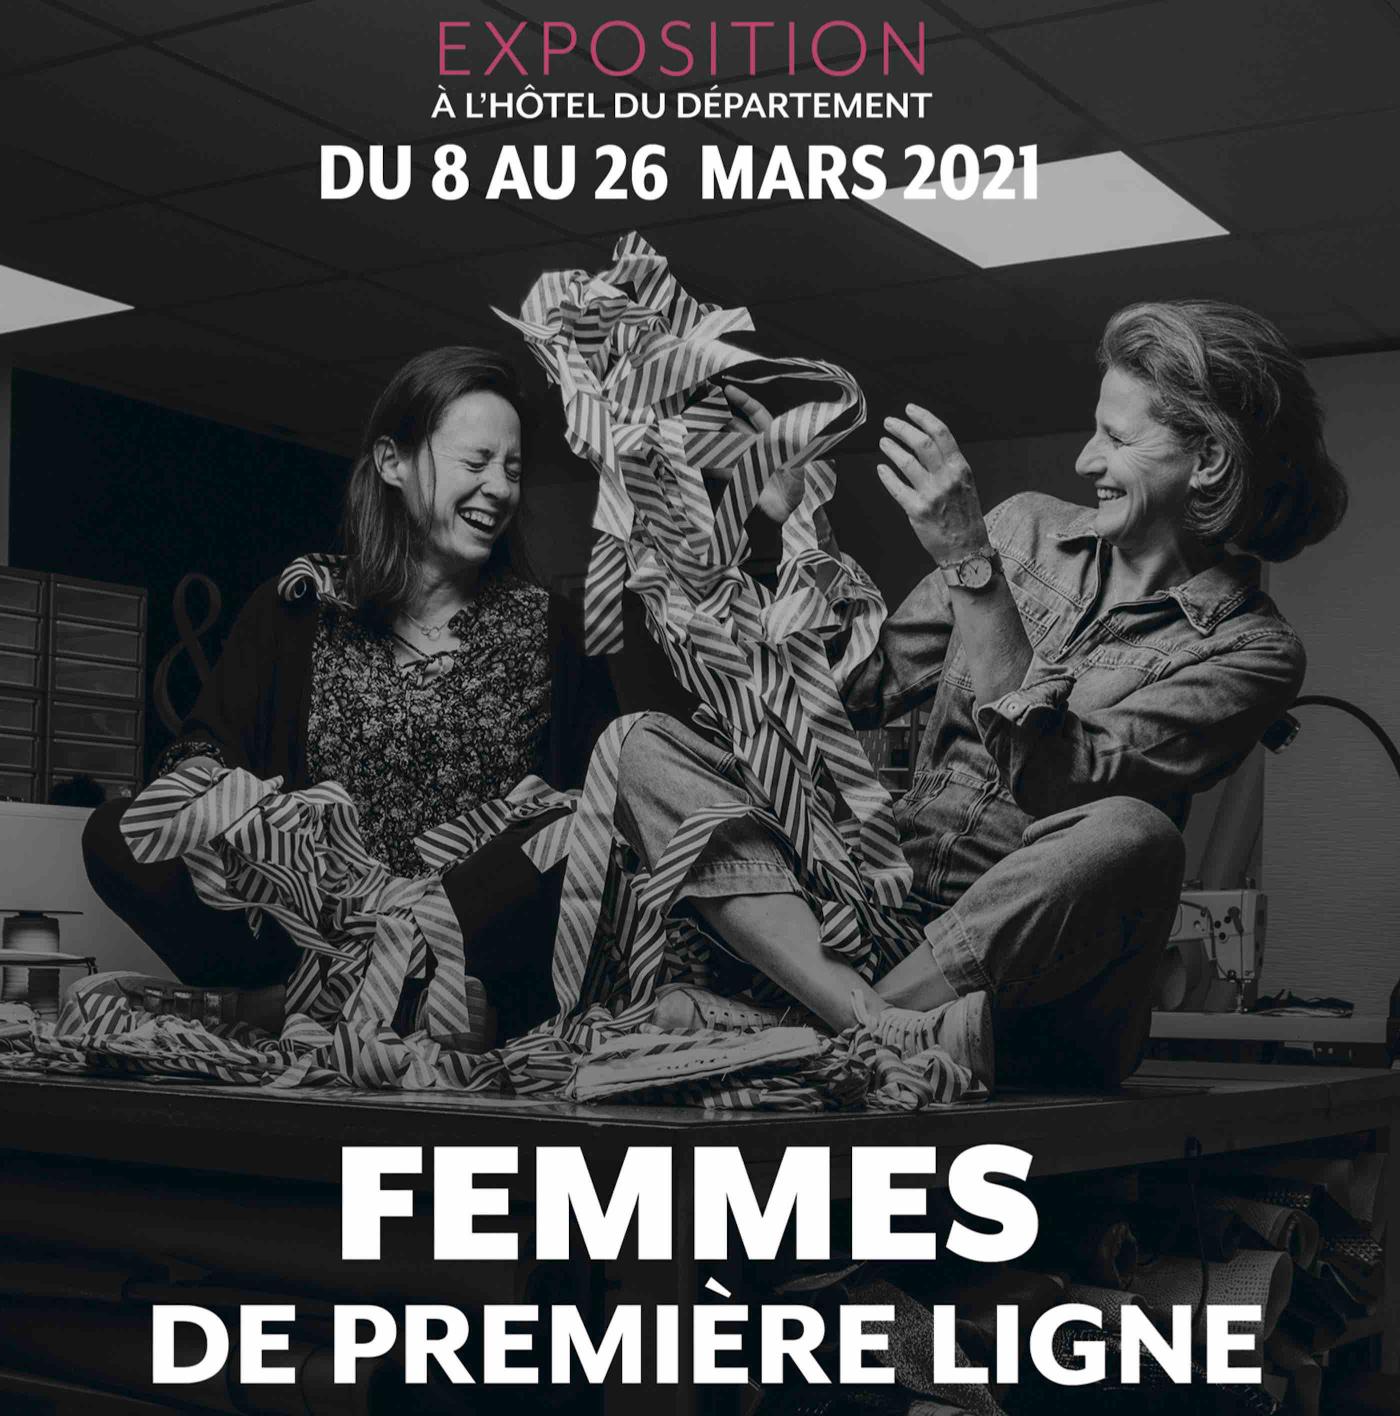 Affiche de l'exposition "Femmes de première ligne"